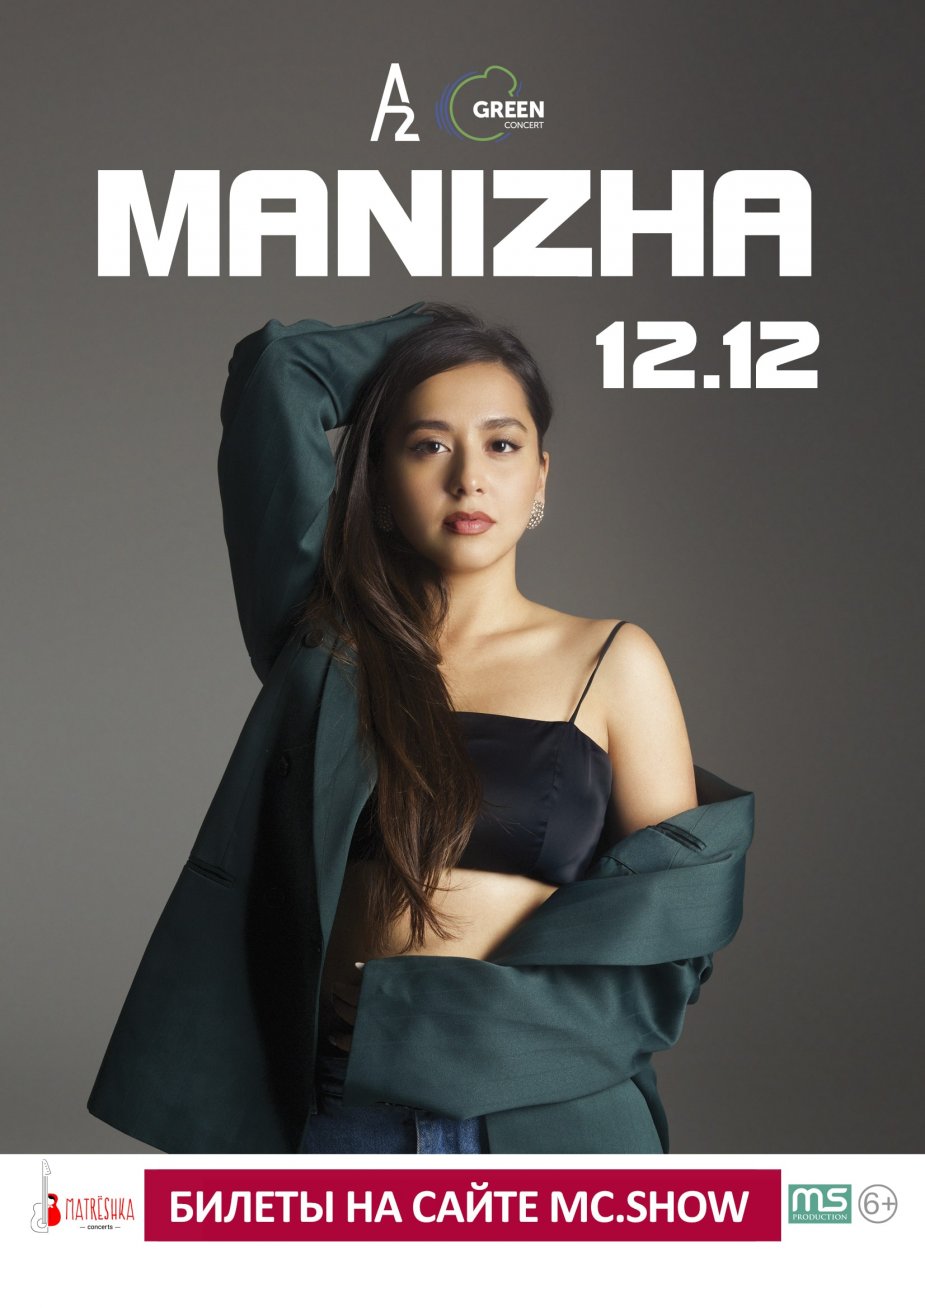 Концерт певицы Manizha